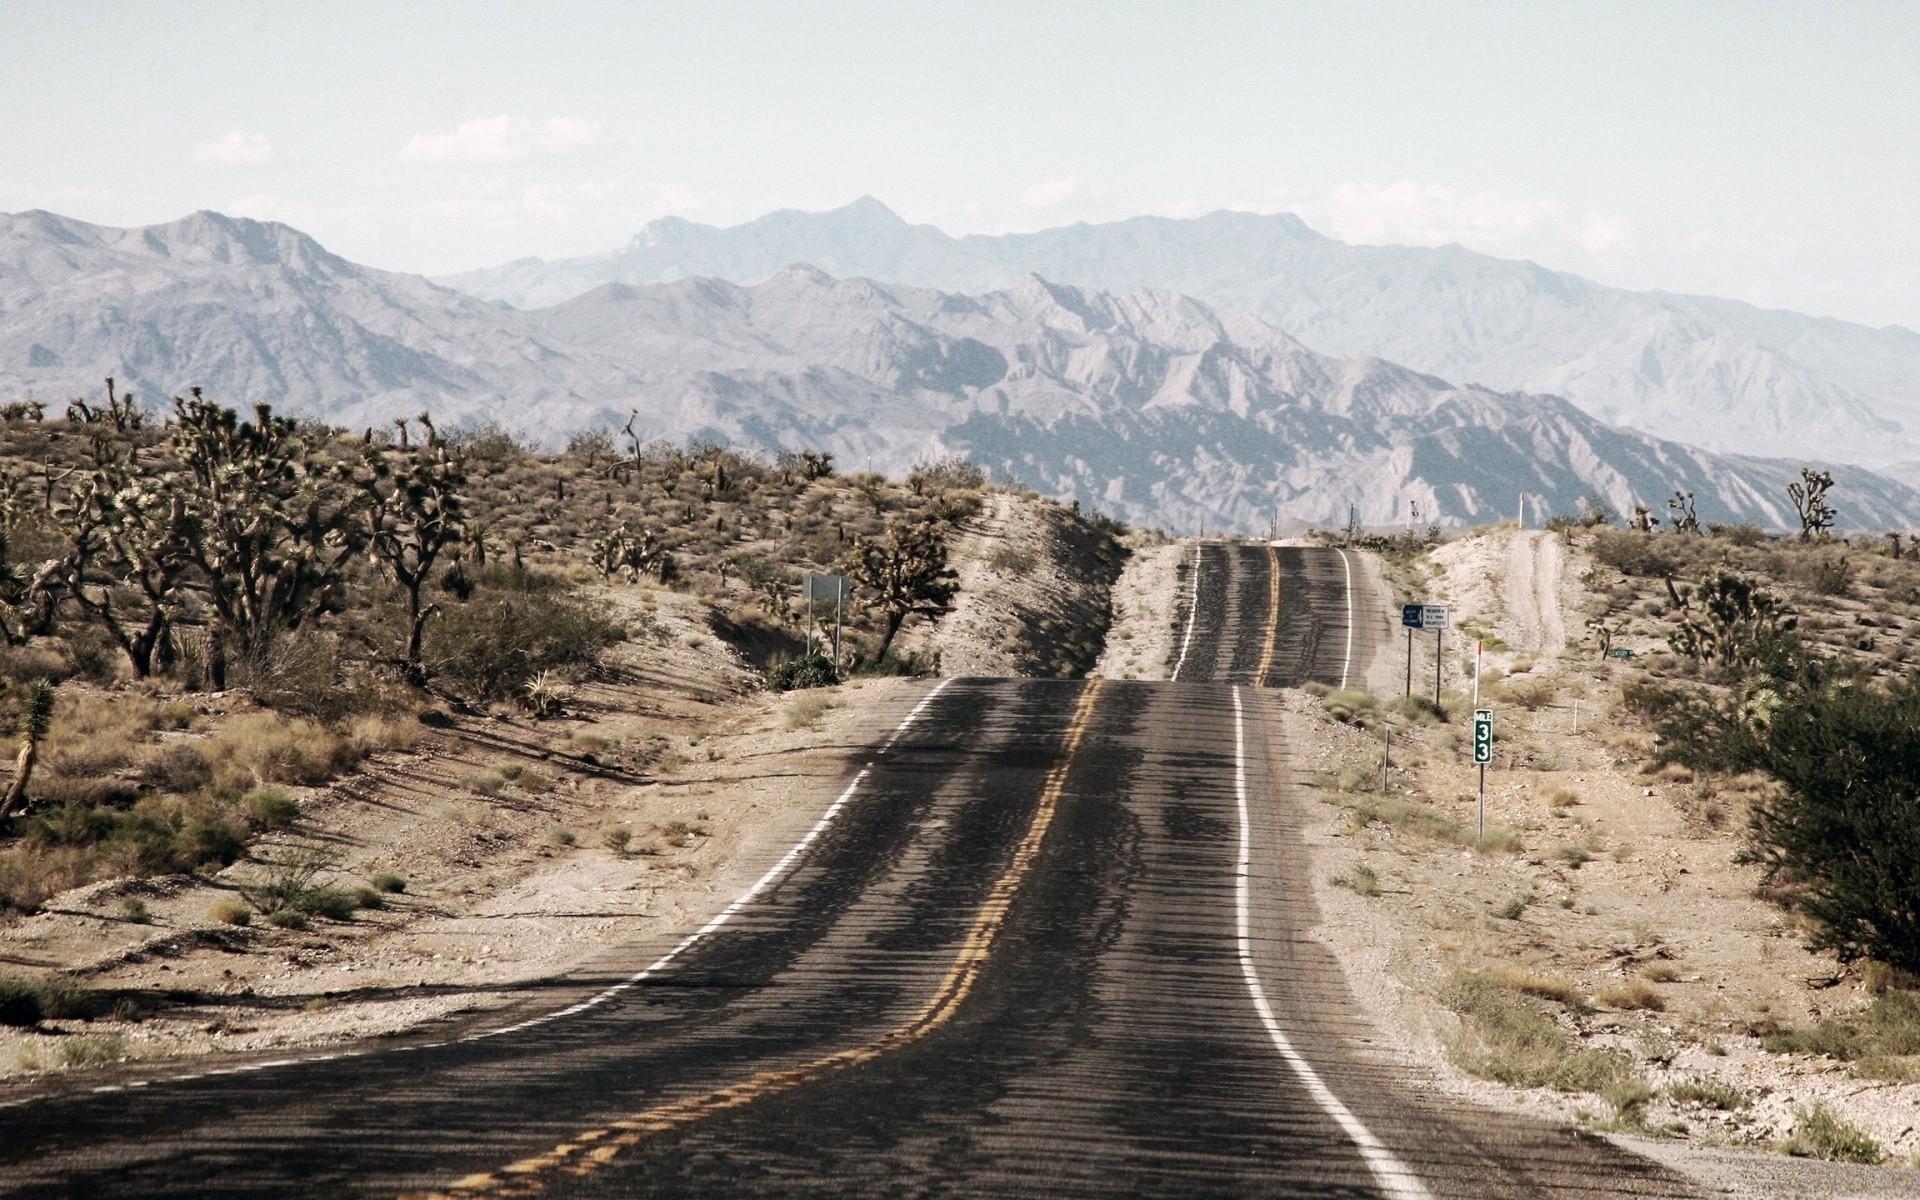 Long Desert Road